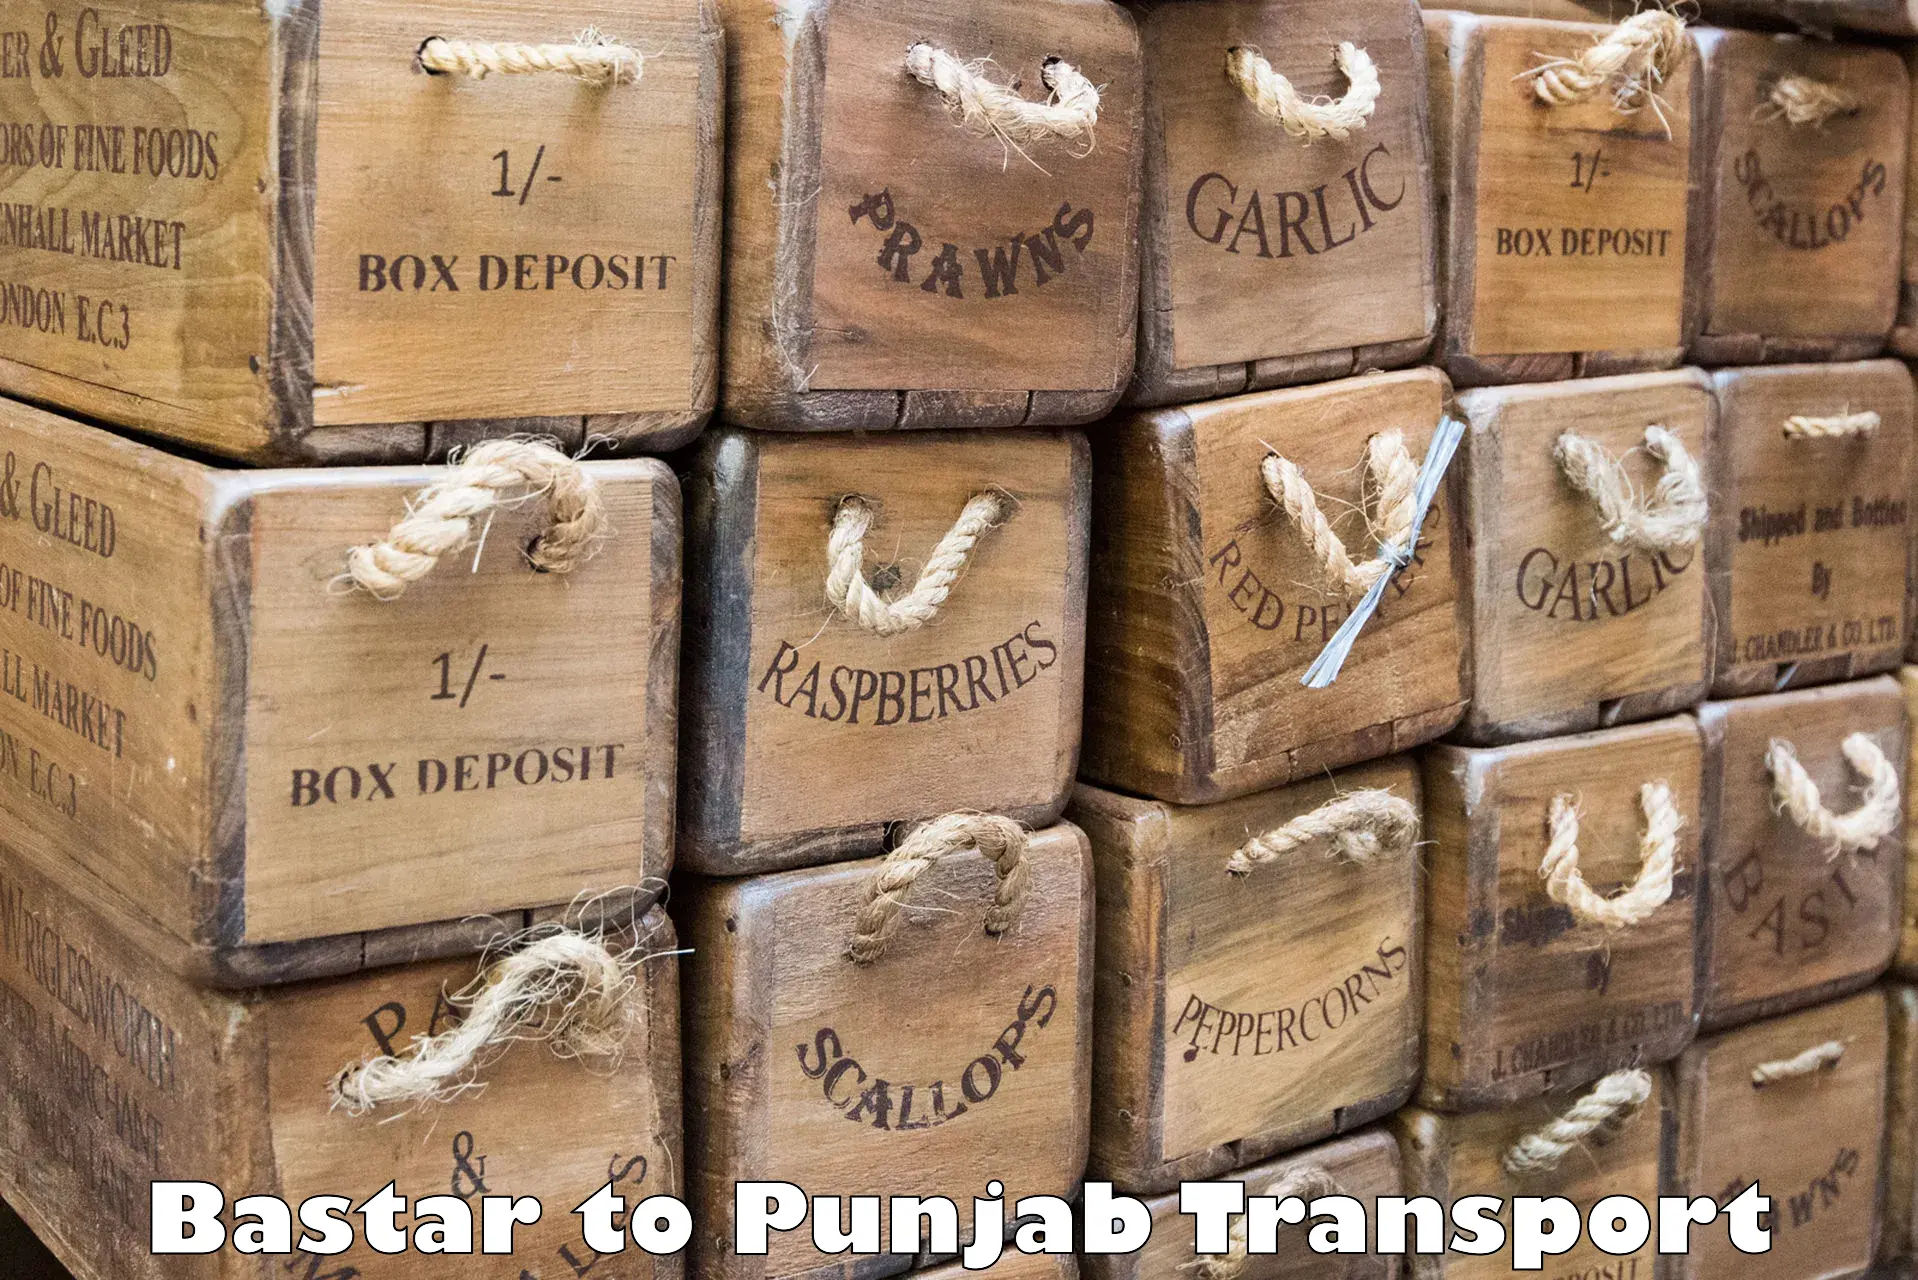 International cargo transportation services Bastar to Amritsar